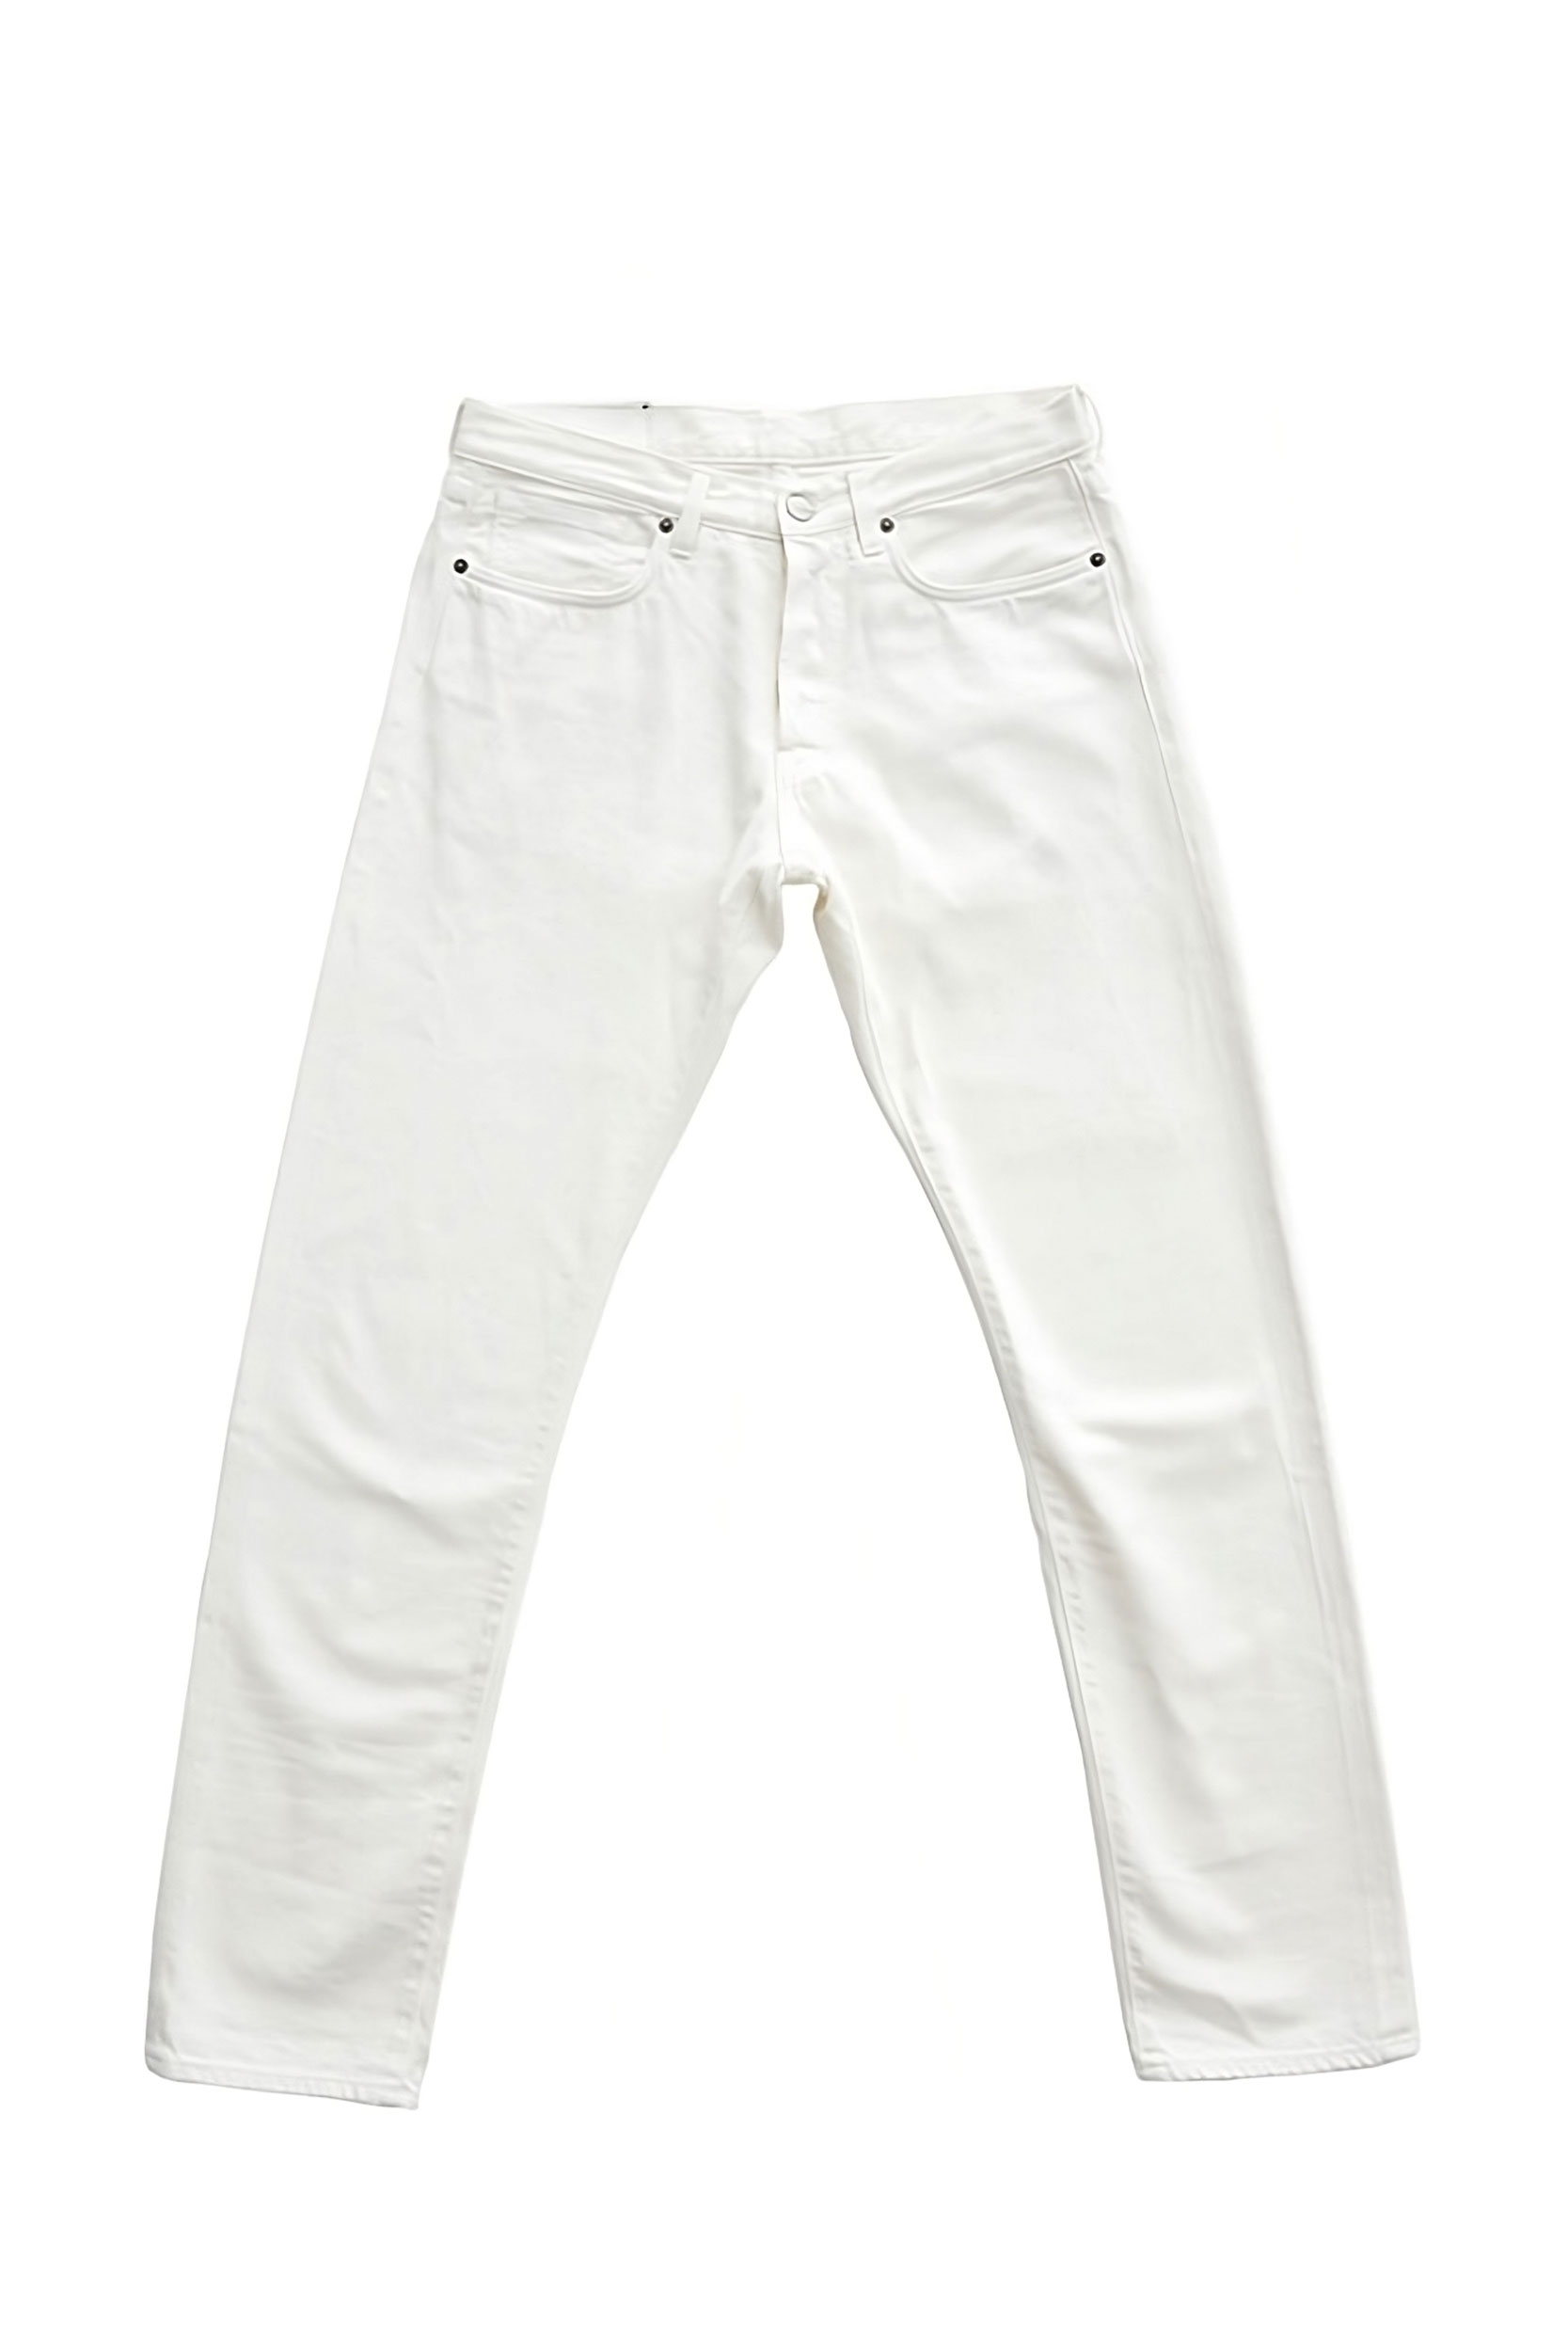 Bandito White Slim Fit Selvedge Jeans - Barbanera